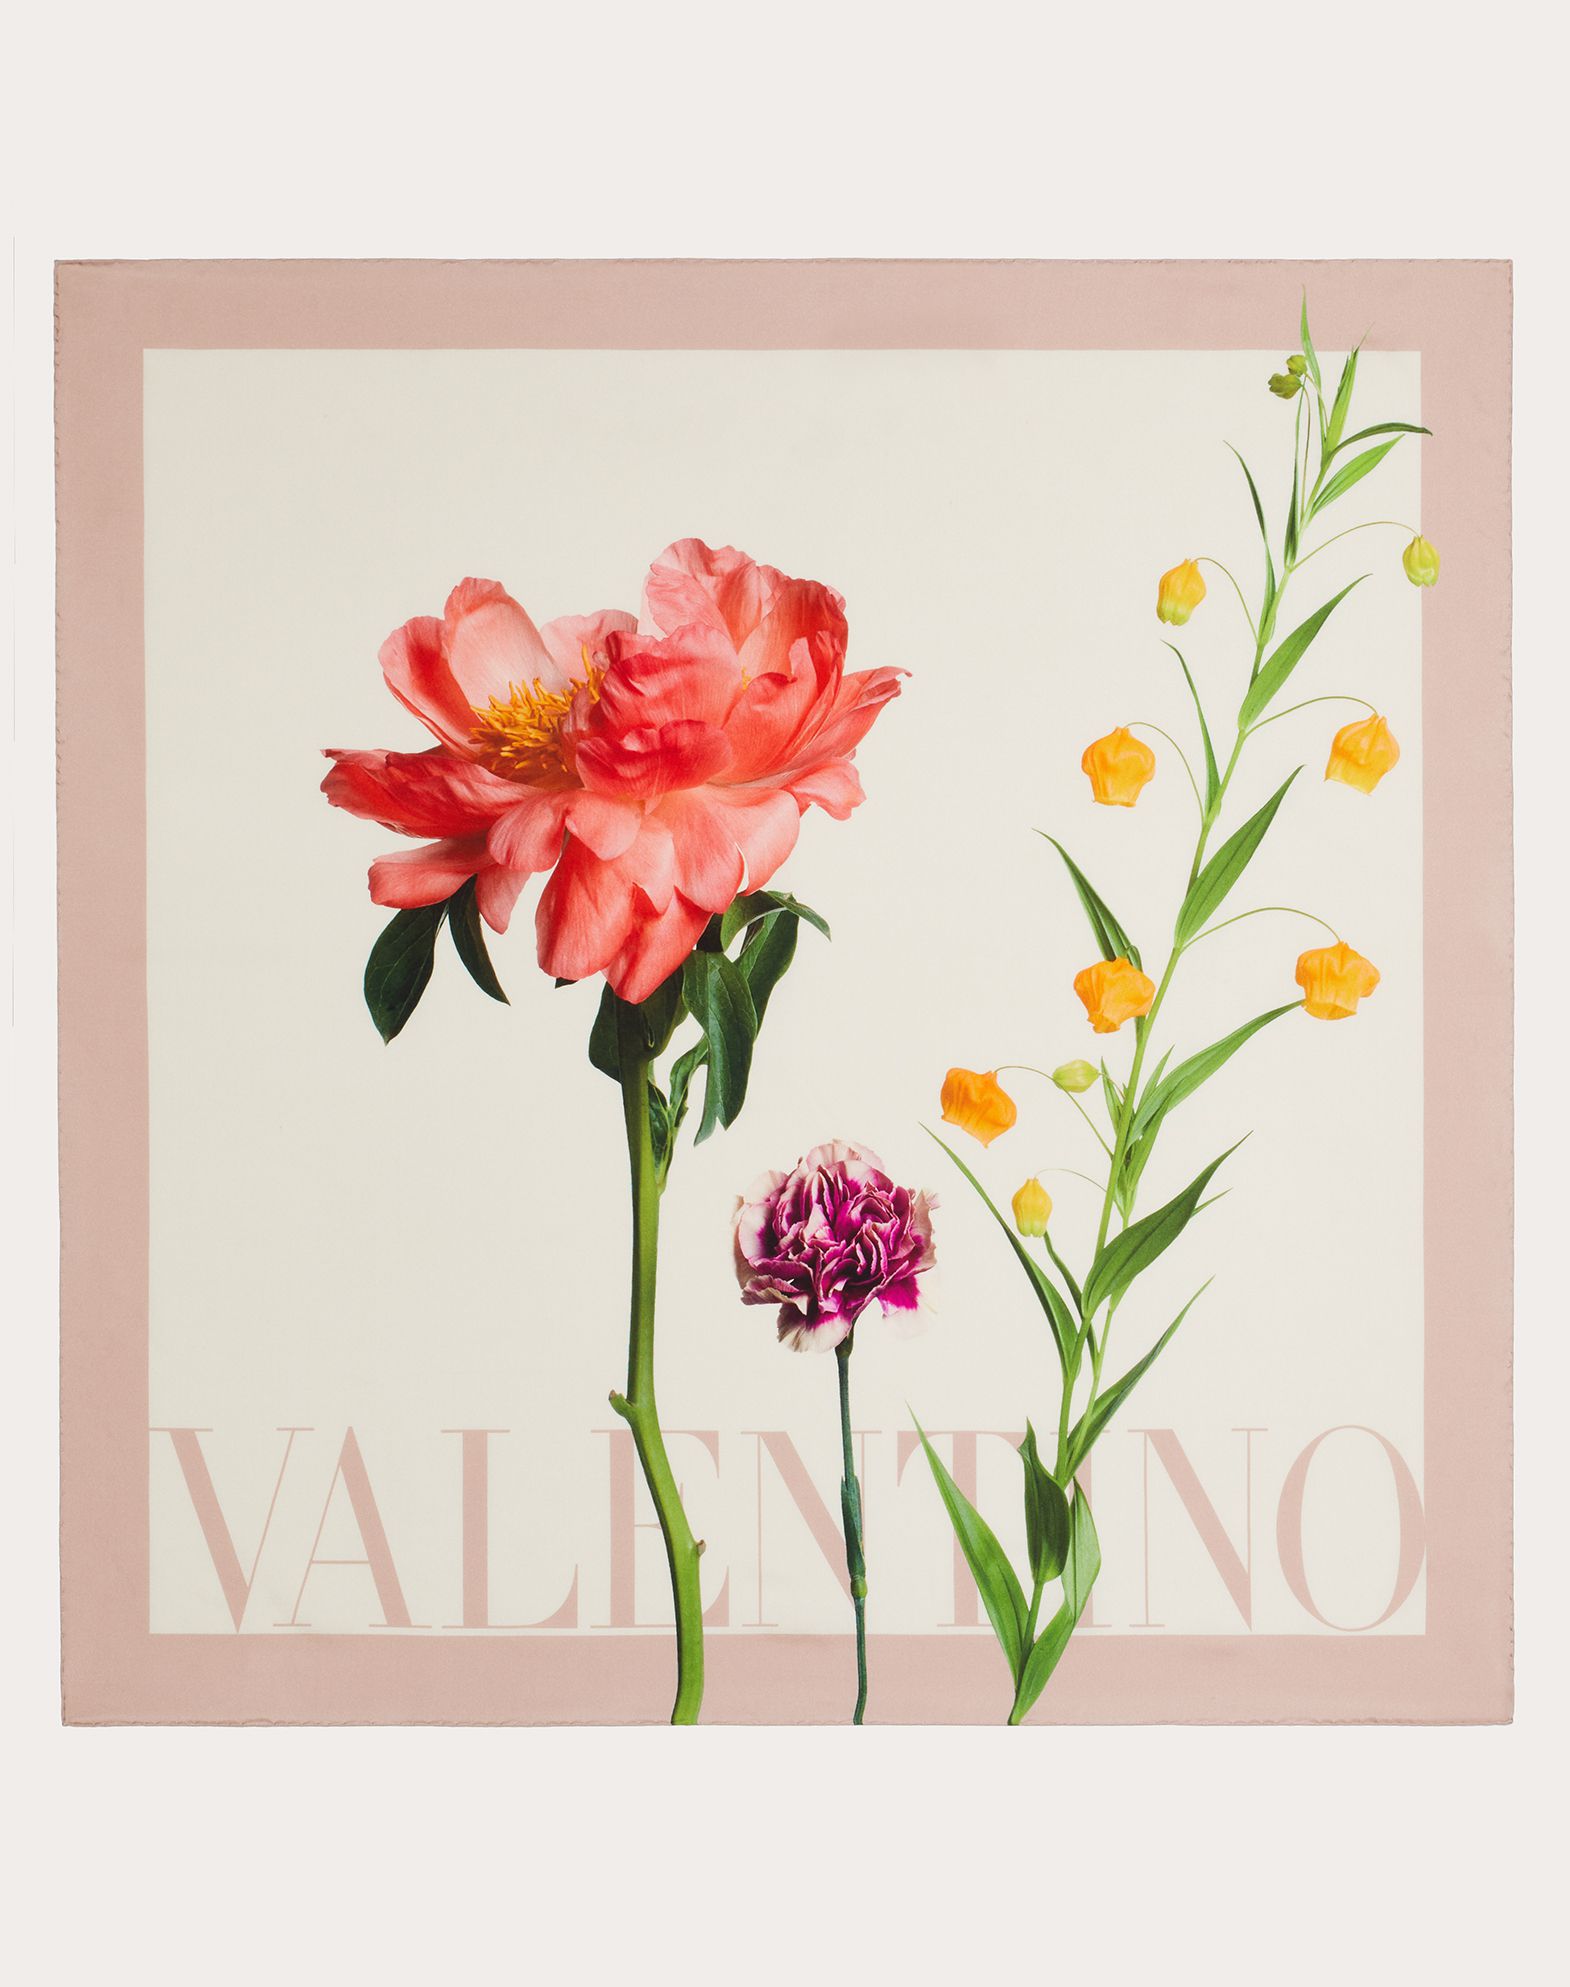 Valentino Garavani Flower Print Silk Twill Foulard 90x90 Cm / 35.4x35.4